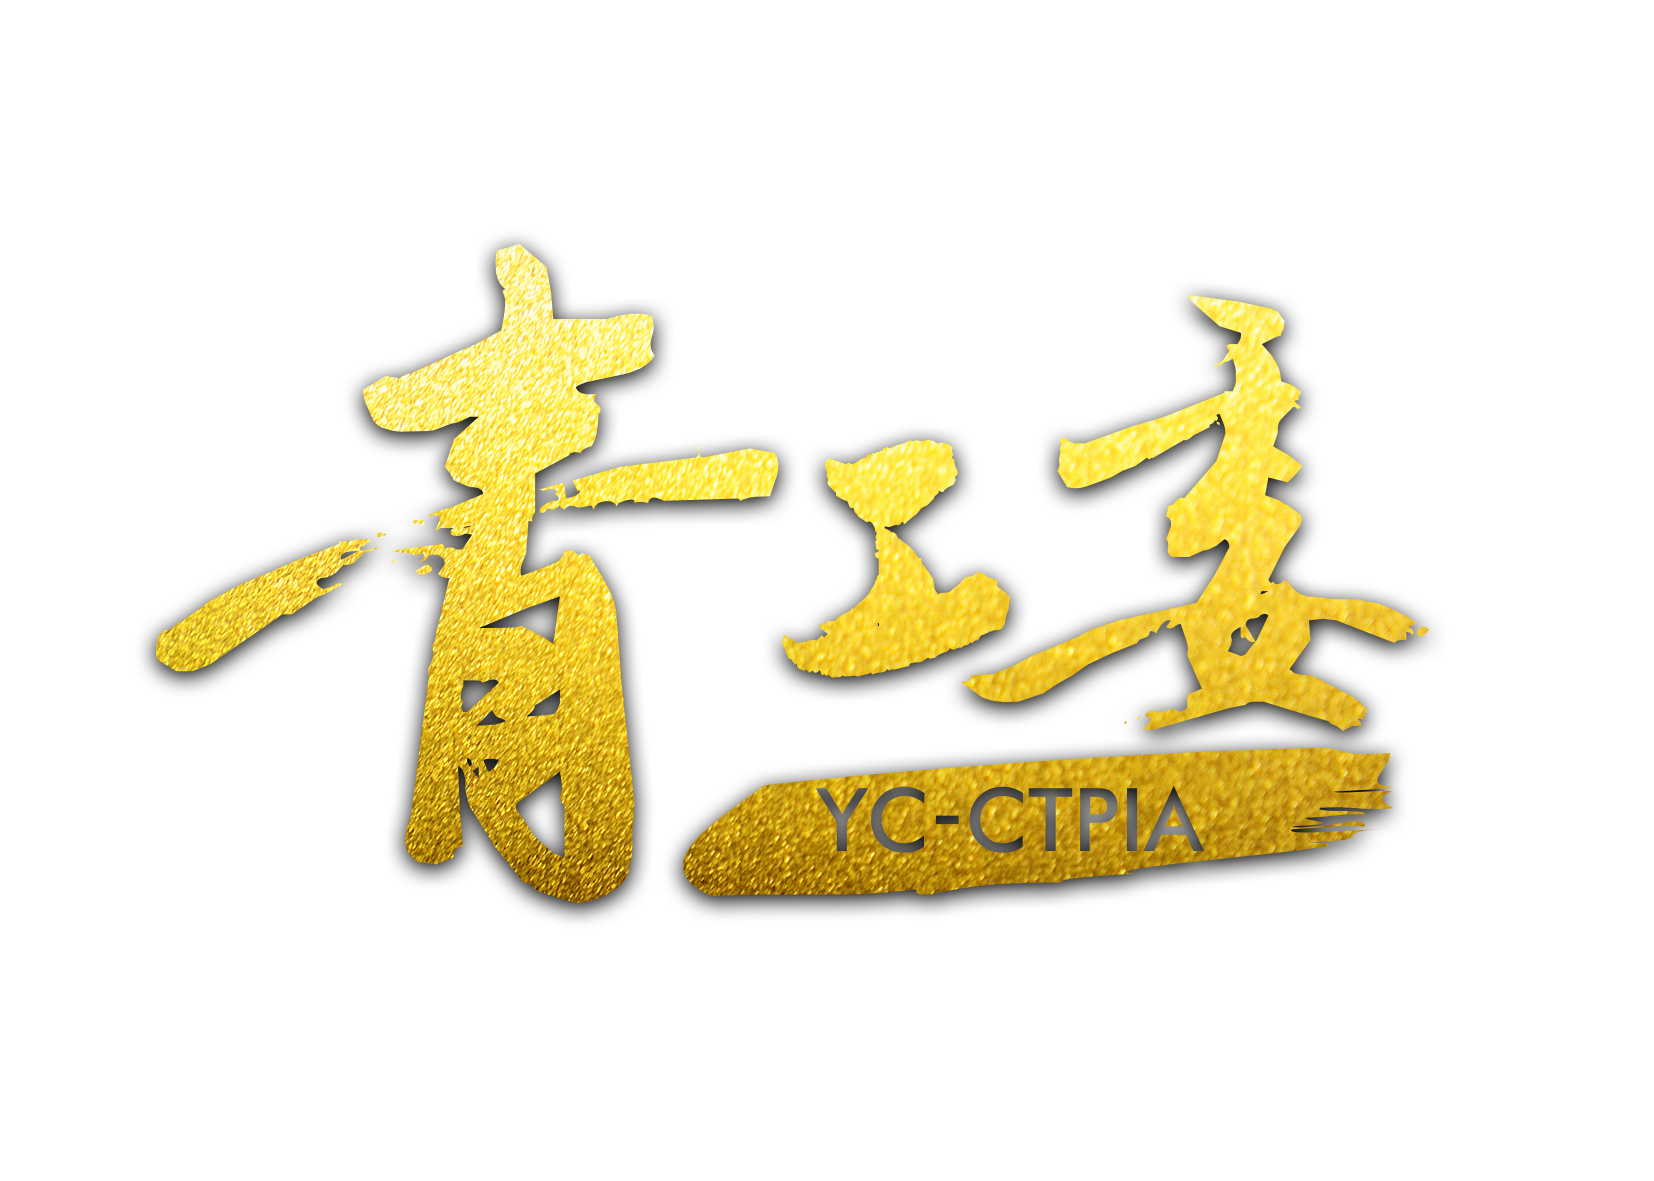 中國電視劇製作產業協會青年工作委員會